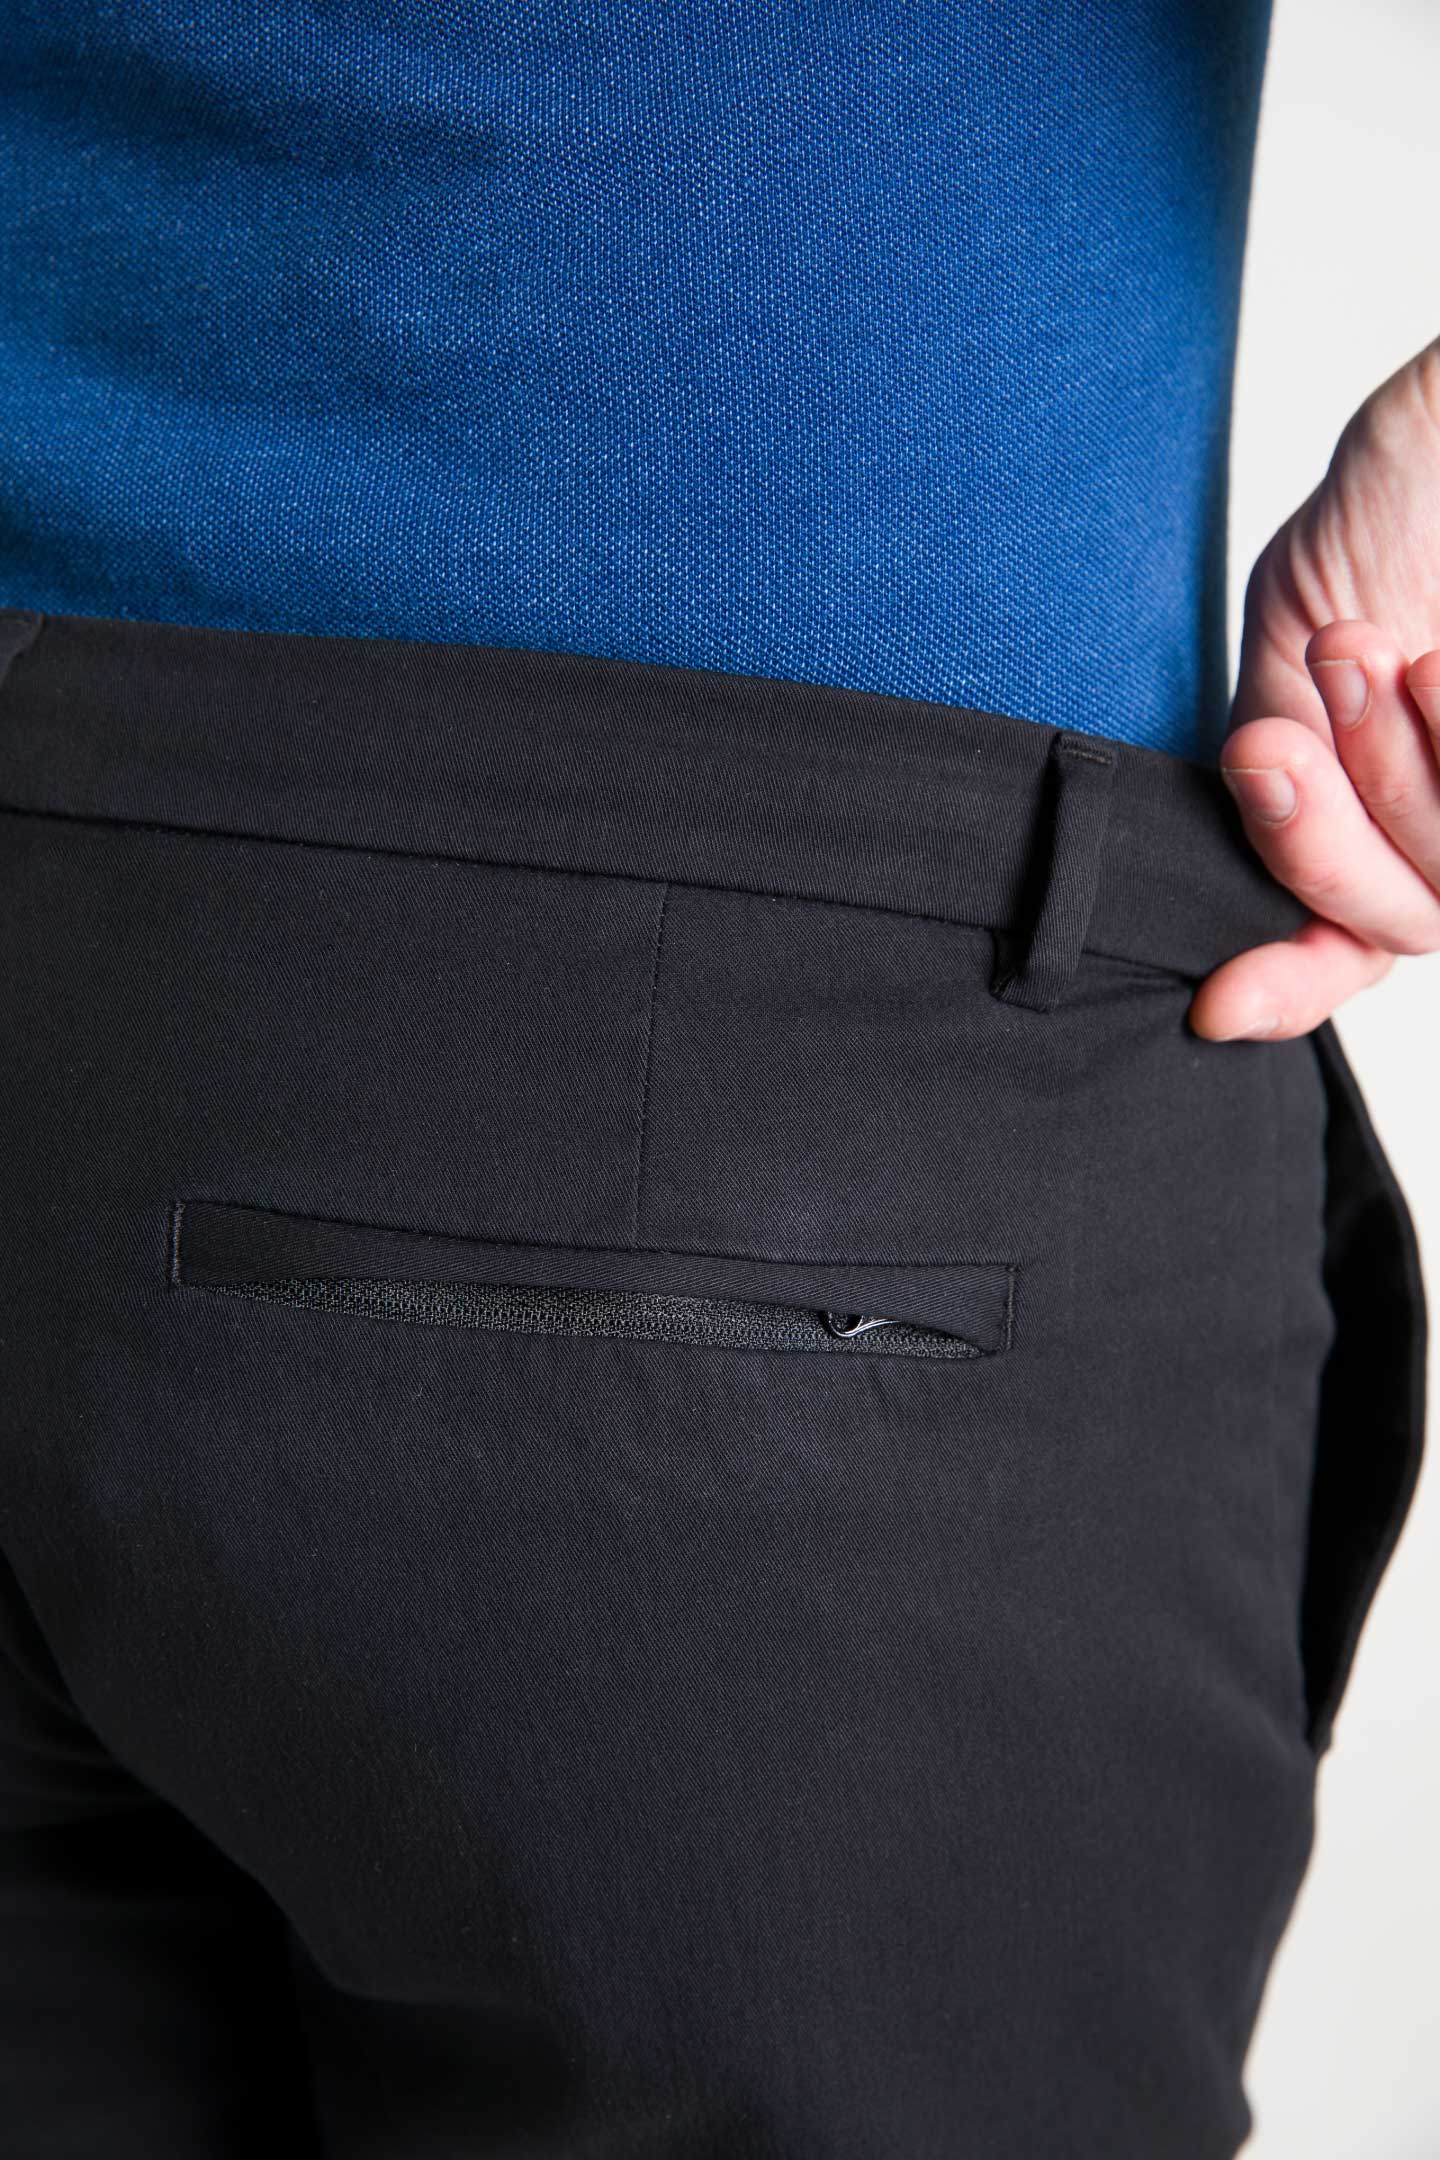 Ash & Erie Black Transit Tech Chinos for Short Men   Chino Pants